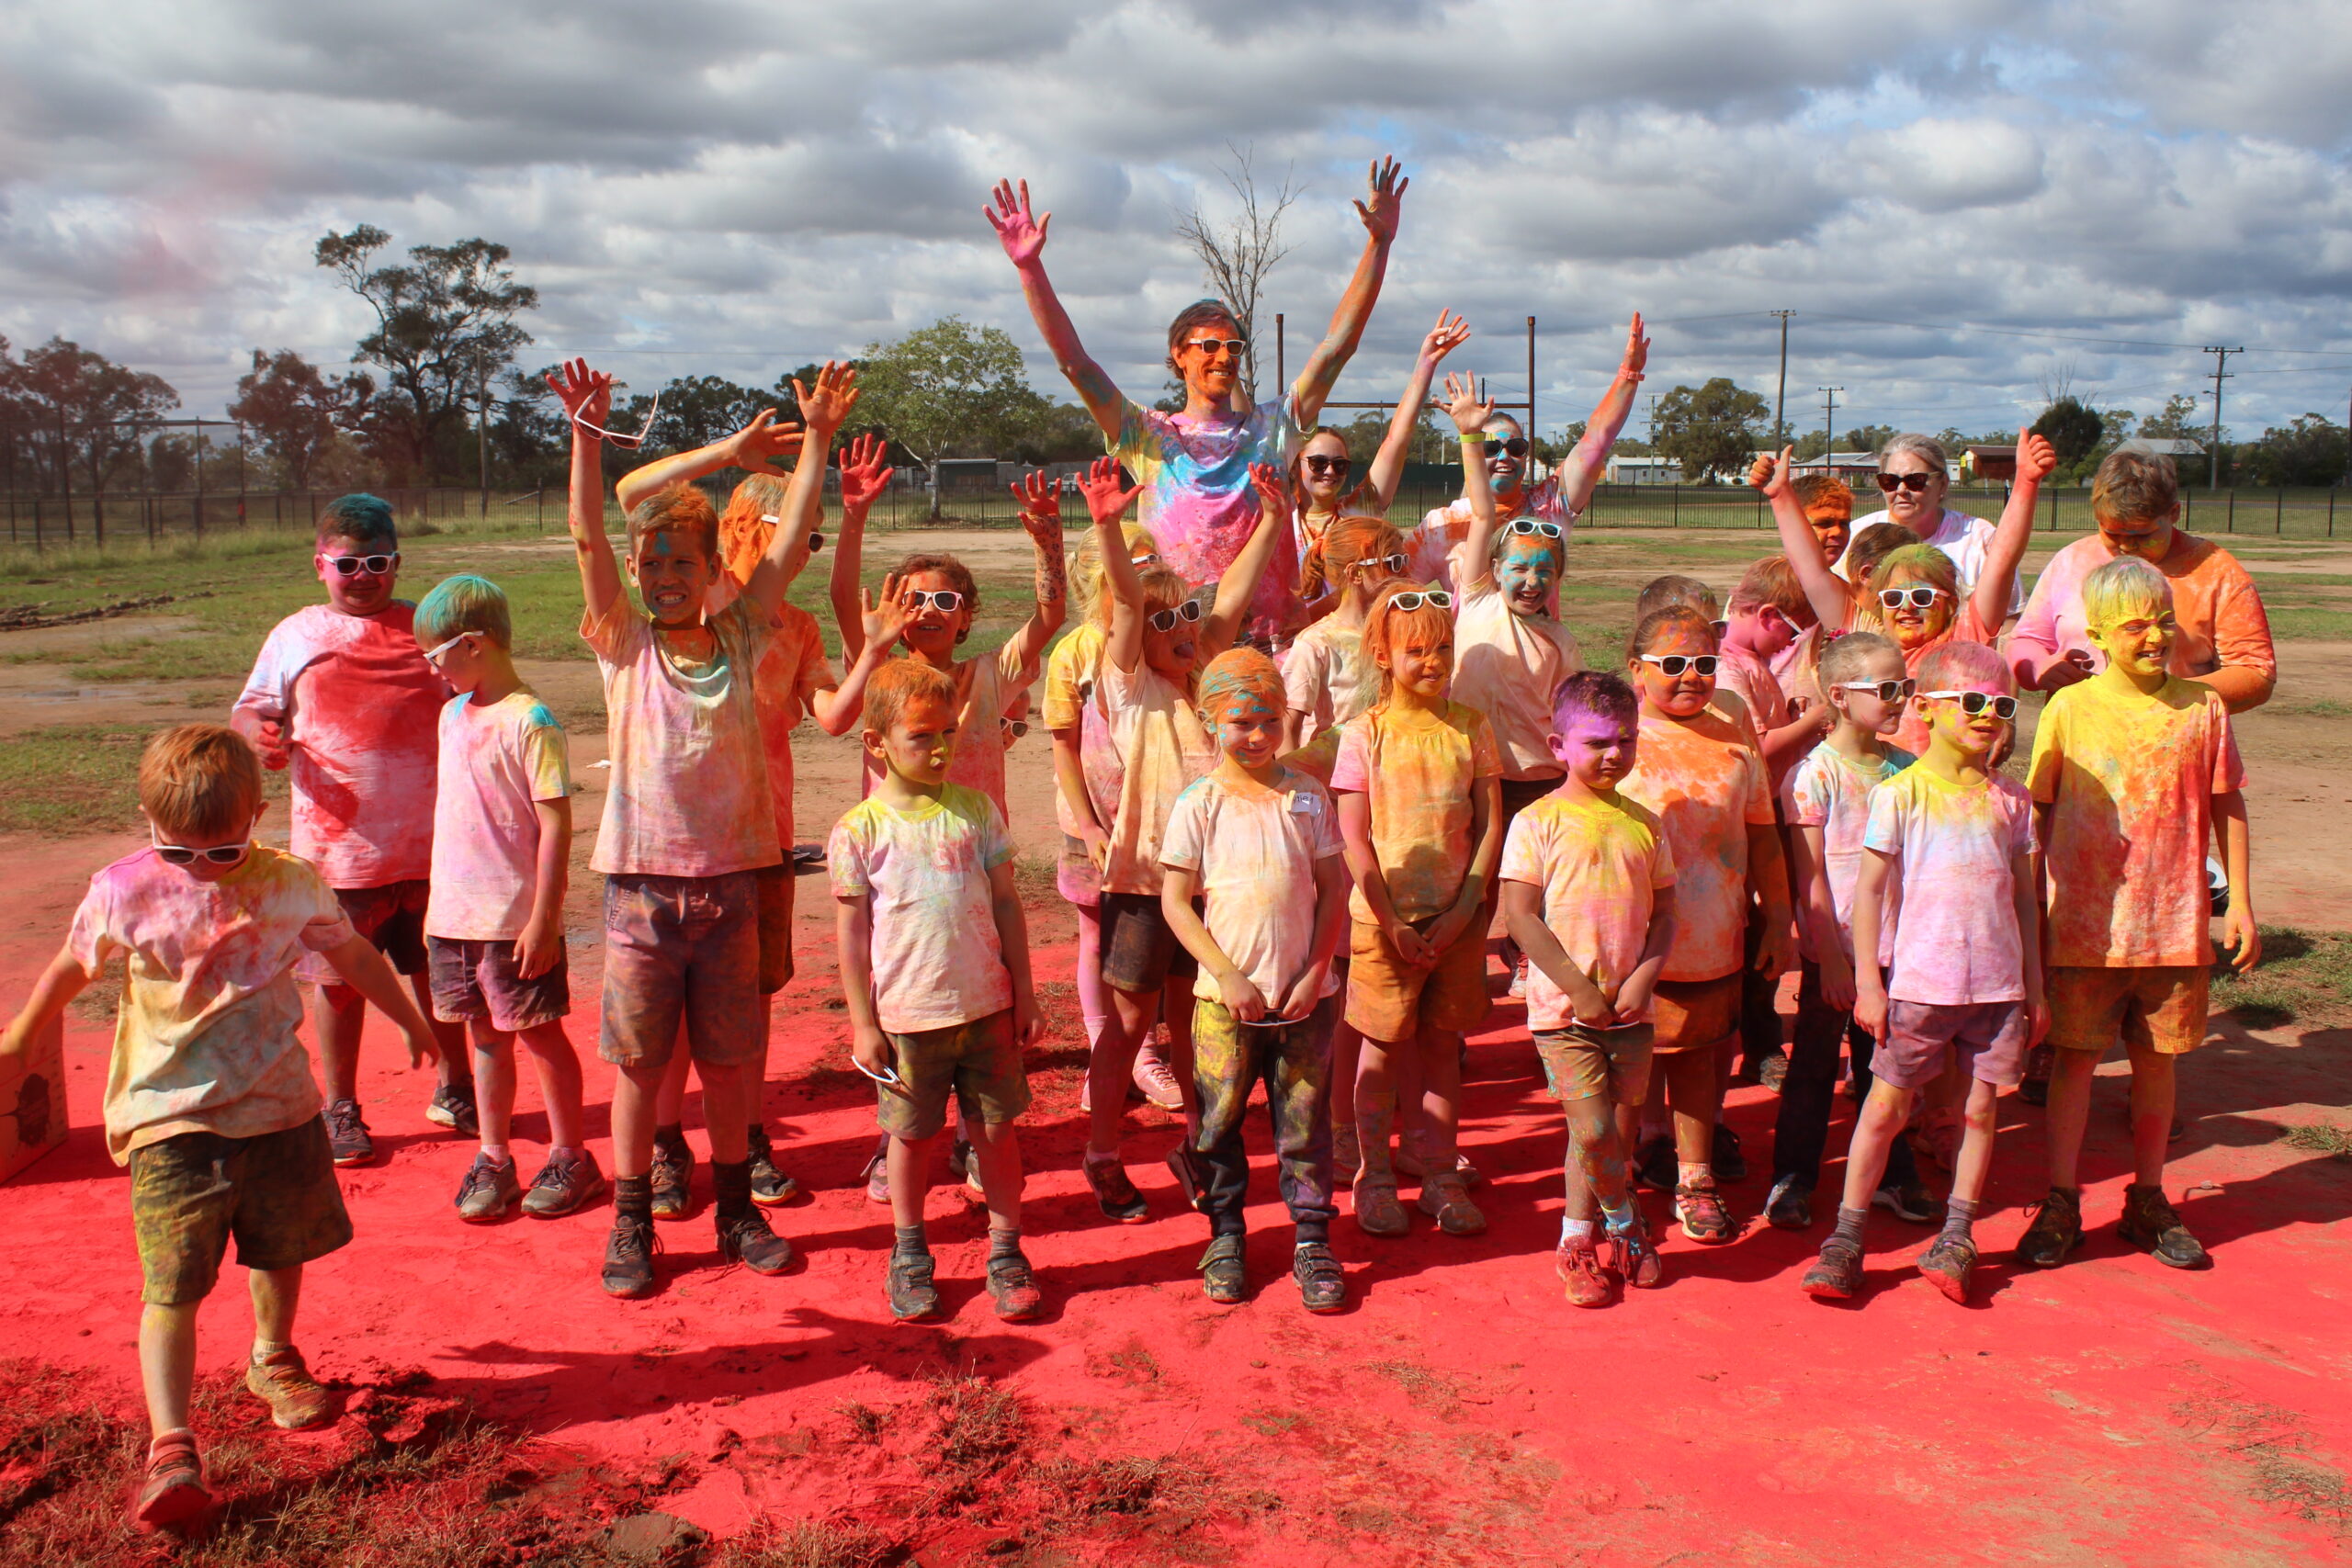 Stacks of fun at Pilliga colour run | PHOTOS